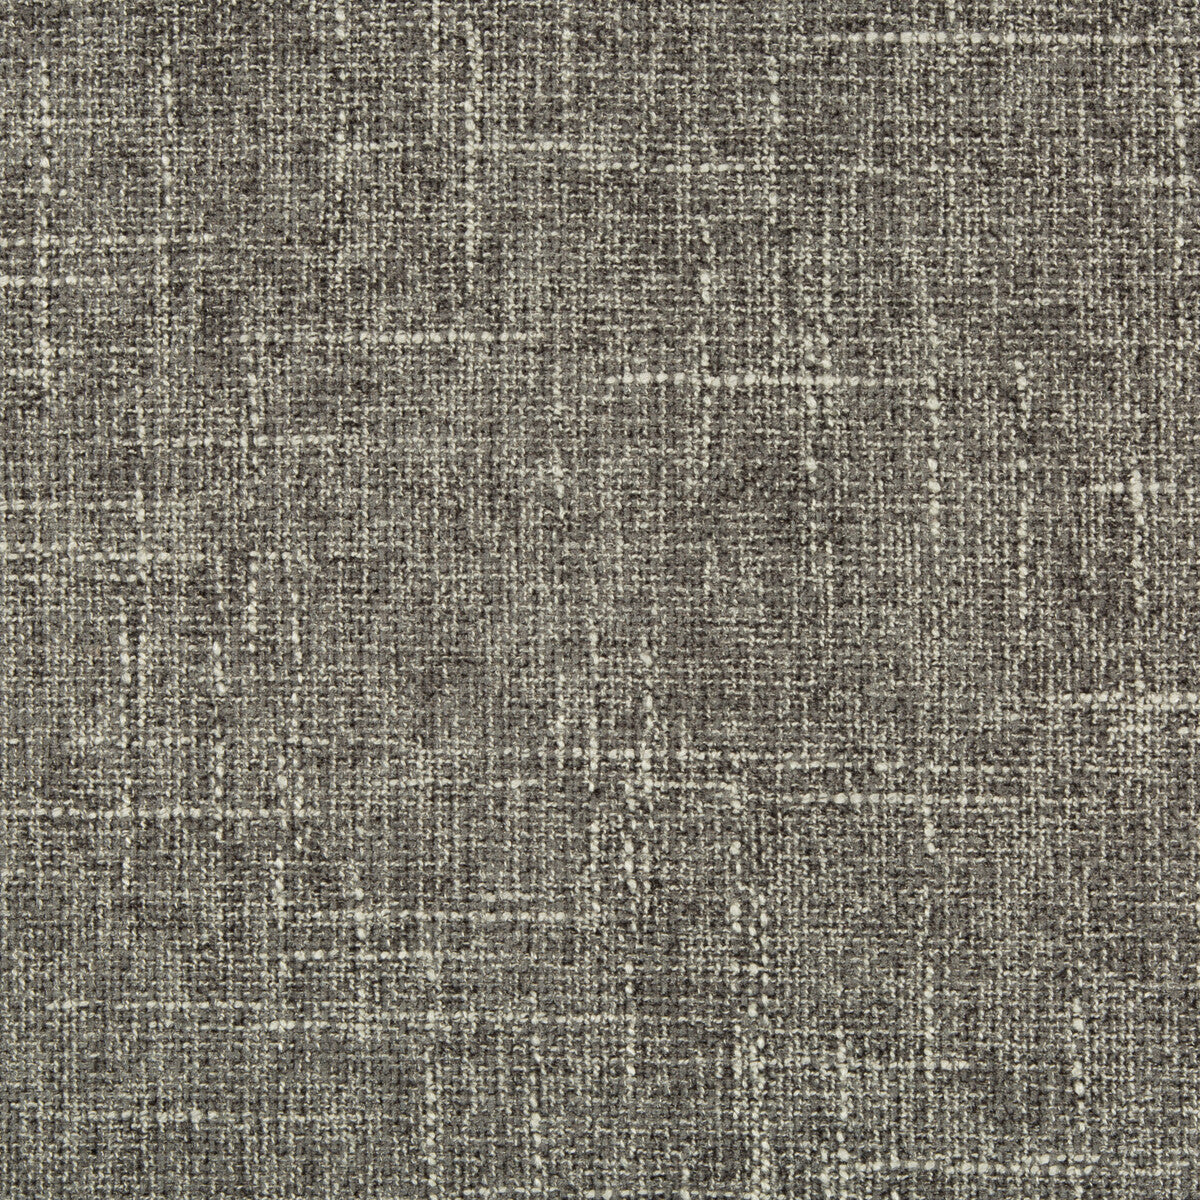 Kravet Basics fabric in 34482-21 color - pattern 34482.21.0 - by Kravet Basics